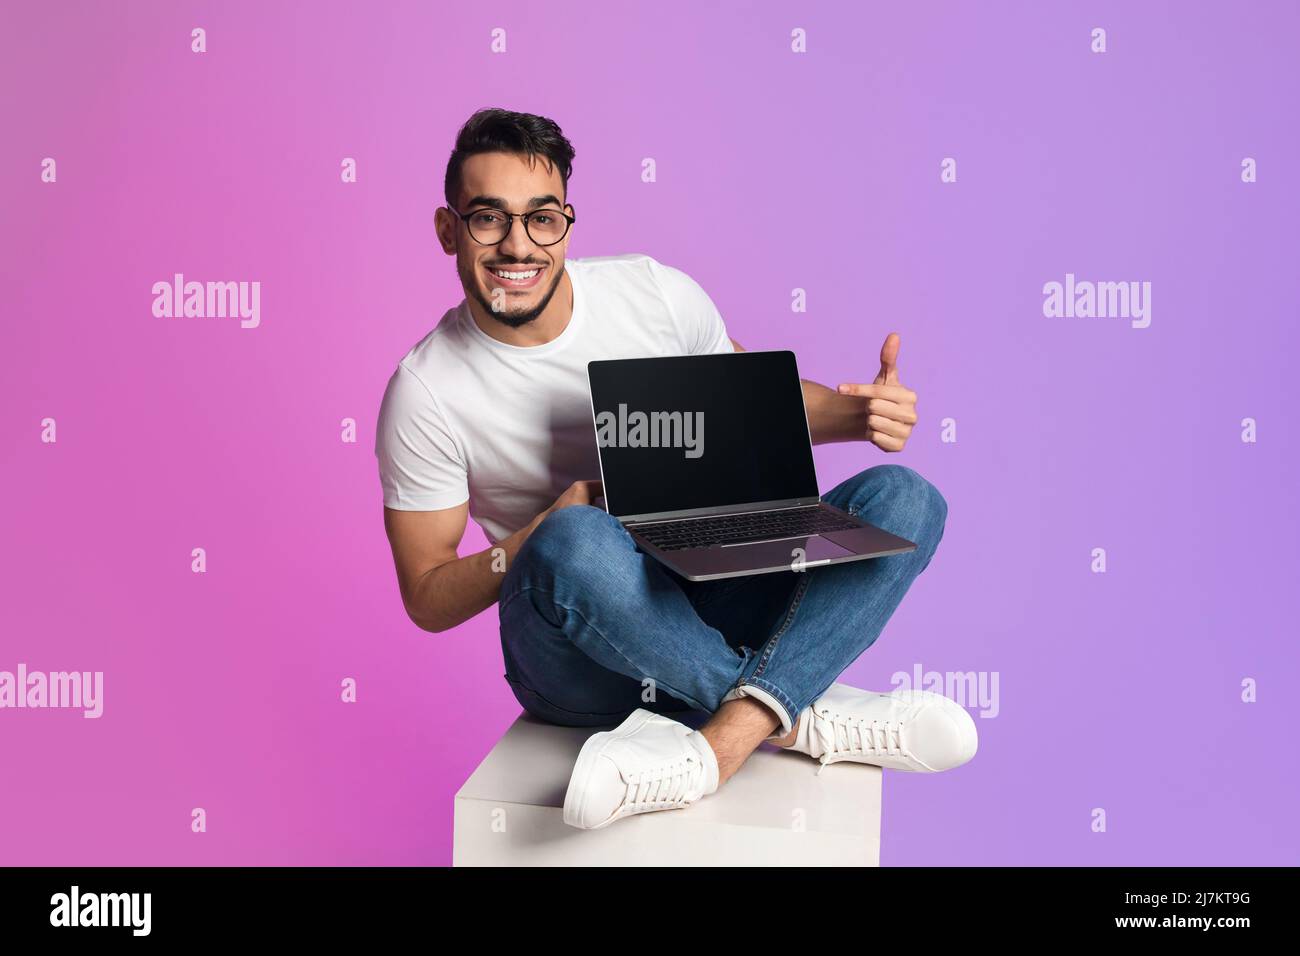 Voller glücklicher junger arabischer Mann, der mit einem Laptop-Computer überkreuzt sitzt und auf einen leeren Bildschirm zeigt und ein Modell anbietet Stockfoto